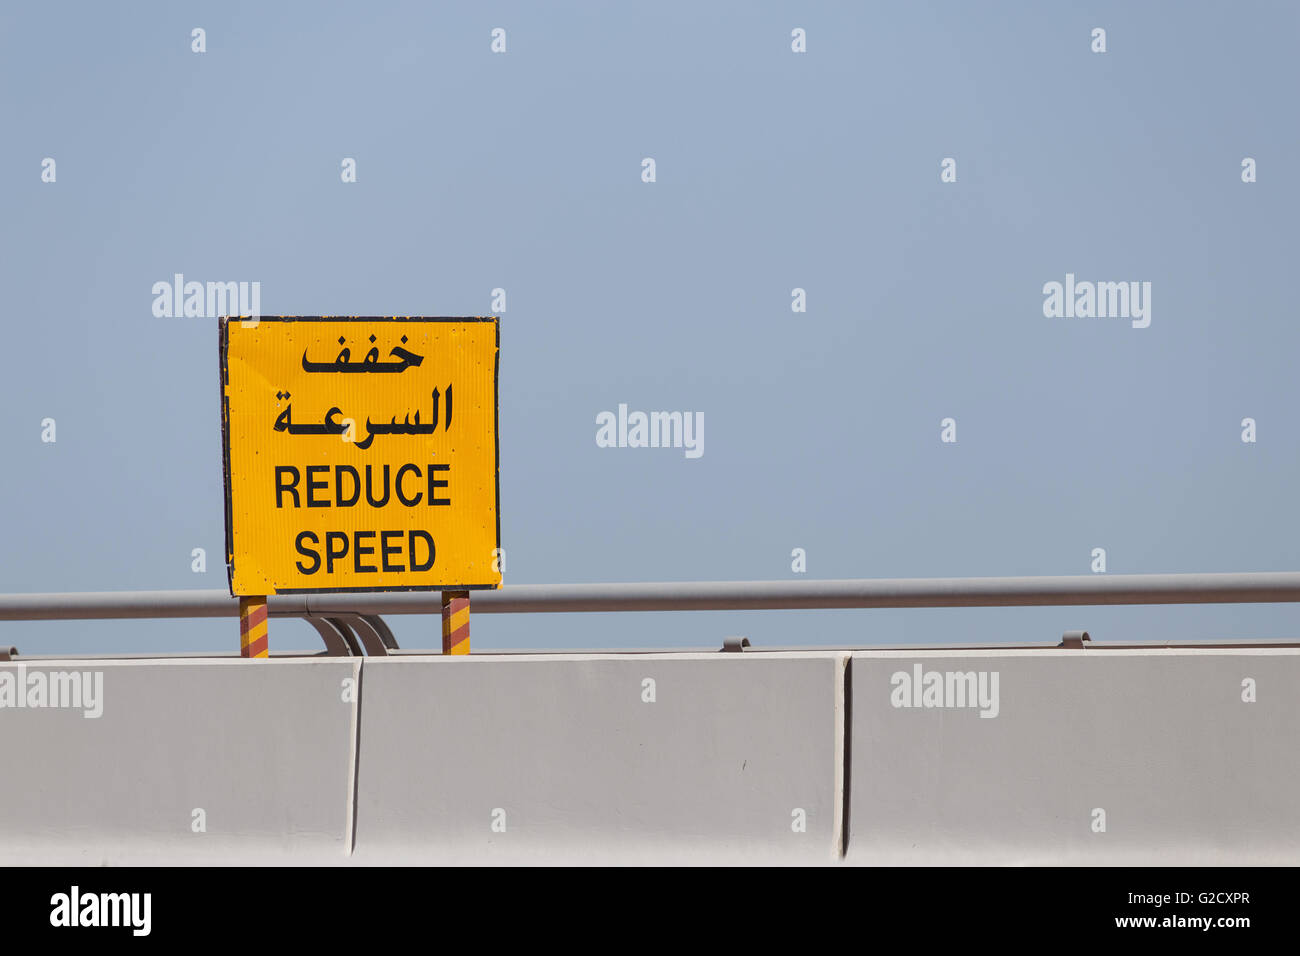 Panneau routier Réduire la vitesse en anglais et arabe Banque D'Images